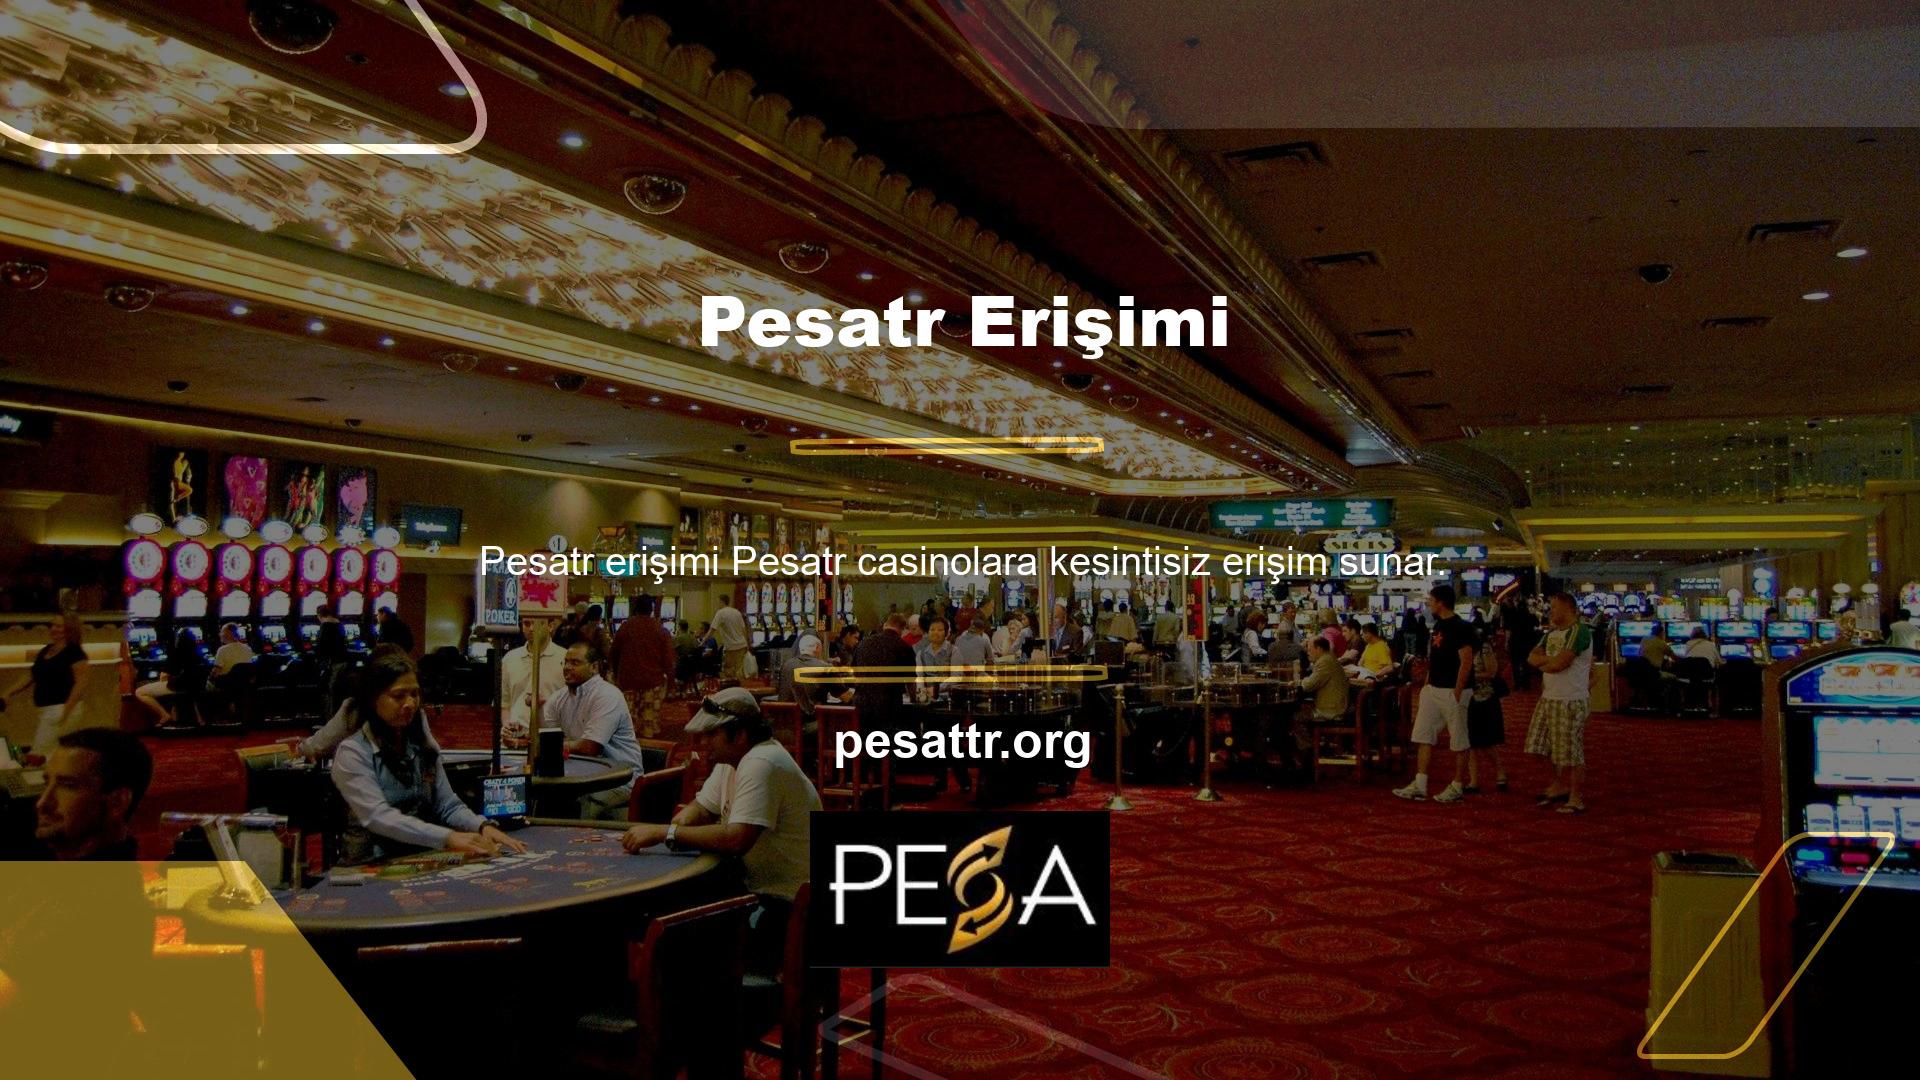 Lisanslı şirketlerden biri olması nedeniyle Türkiye'nin en popüler casinolardan biridir